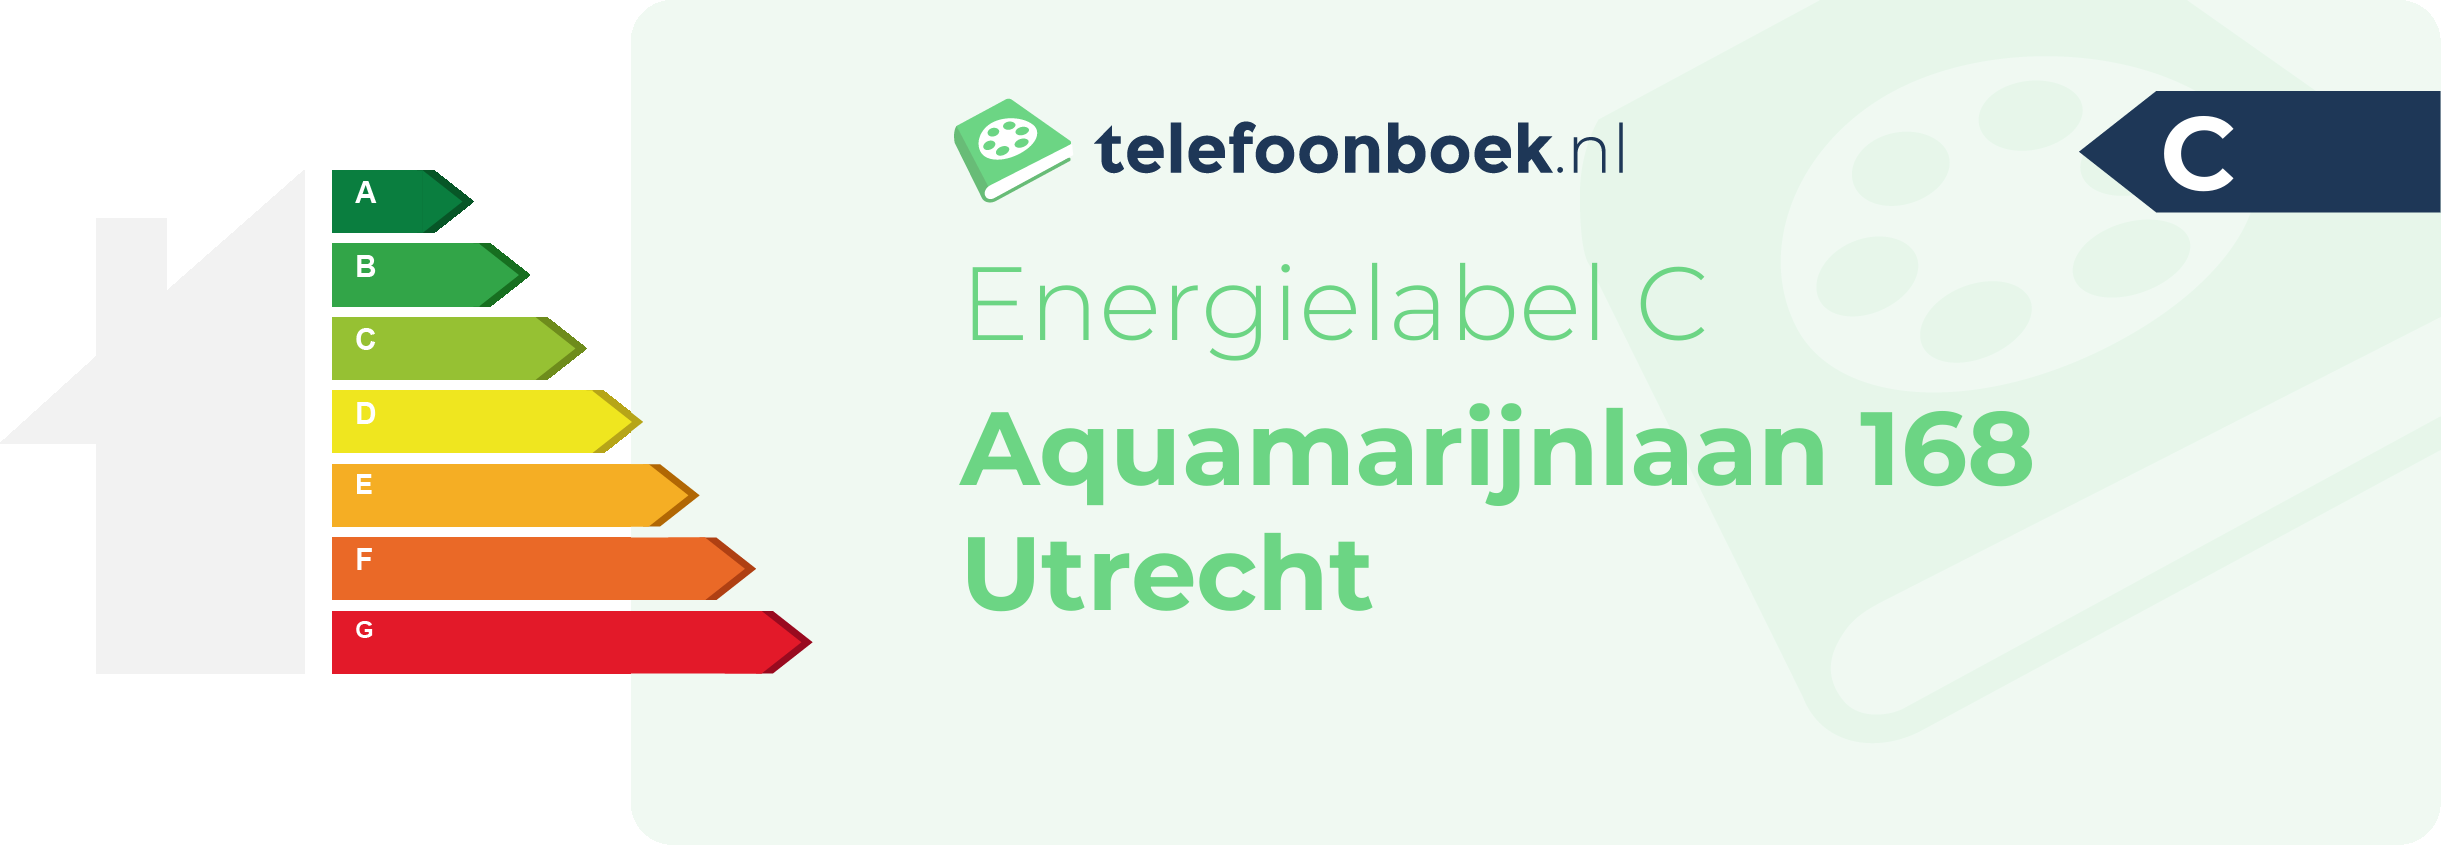 Energielabel Aquamarijnlaan 168 Utrecht